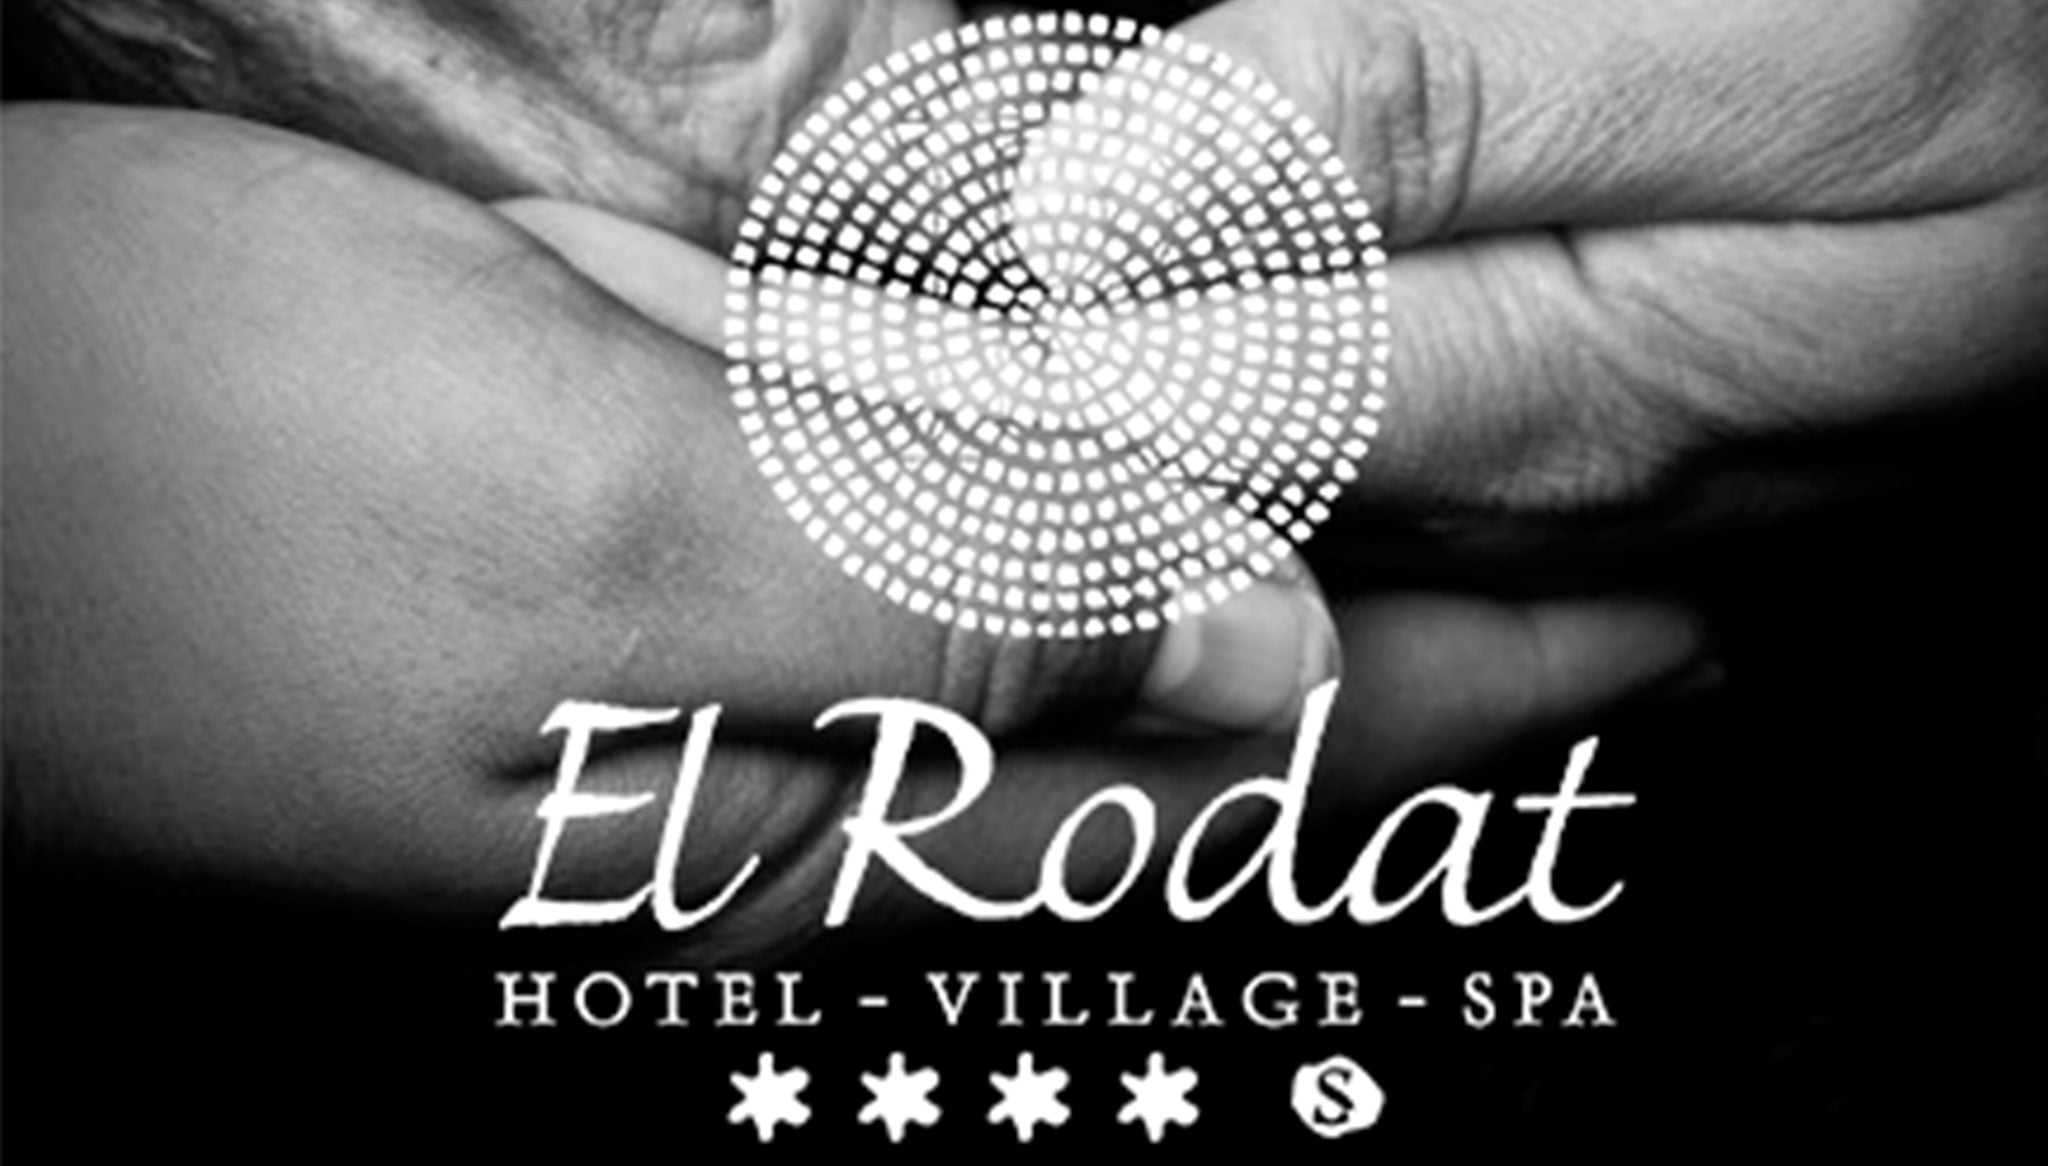 Hotel El Rodat de Jávea cede sus instalaciones en la alarma sanitaria del coronavirus